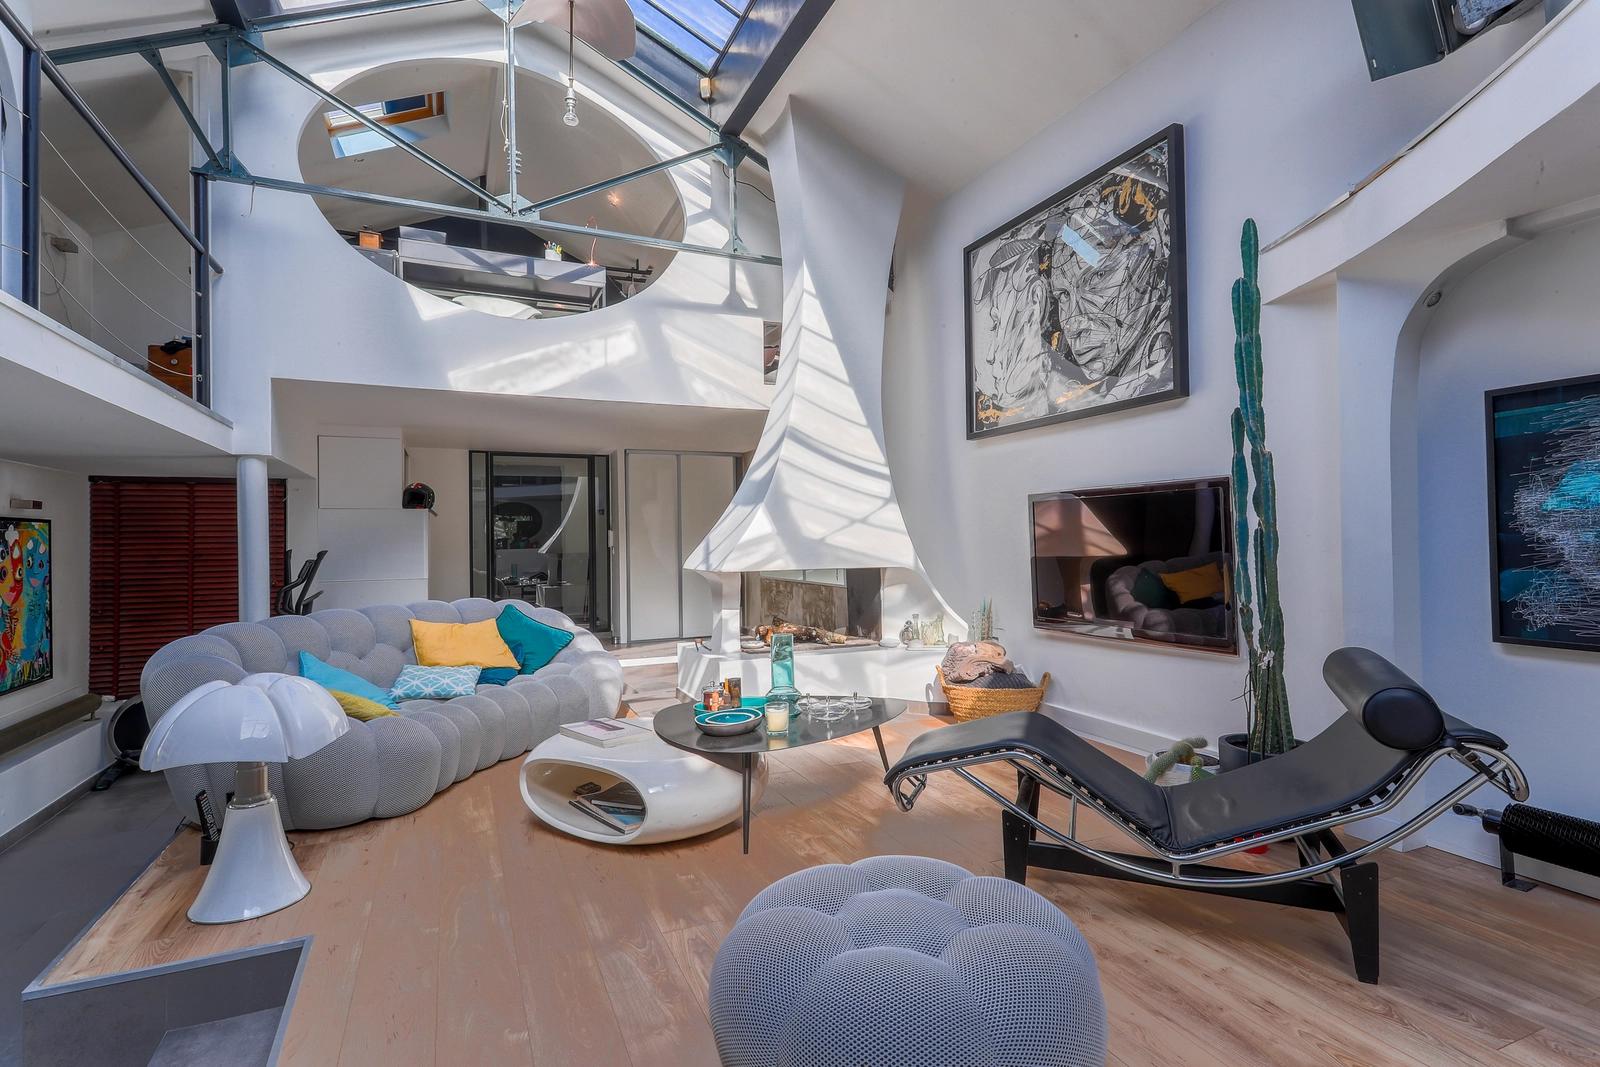 Living room in Loft modern open space - 0